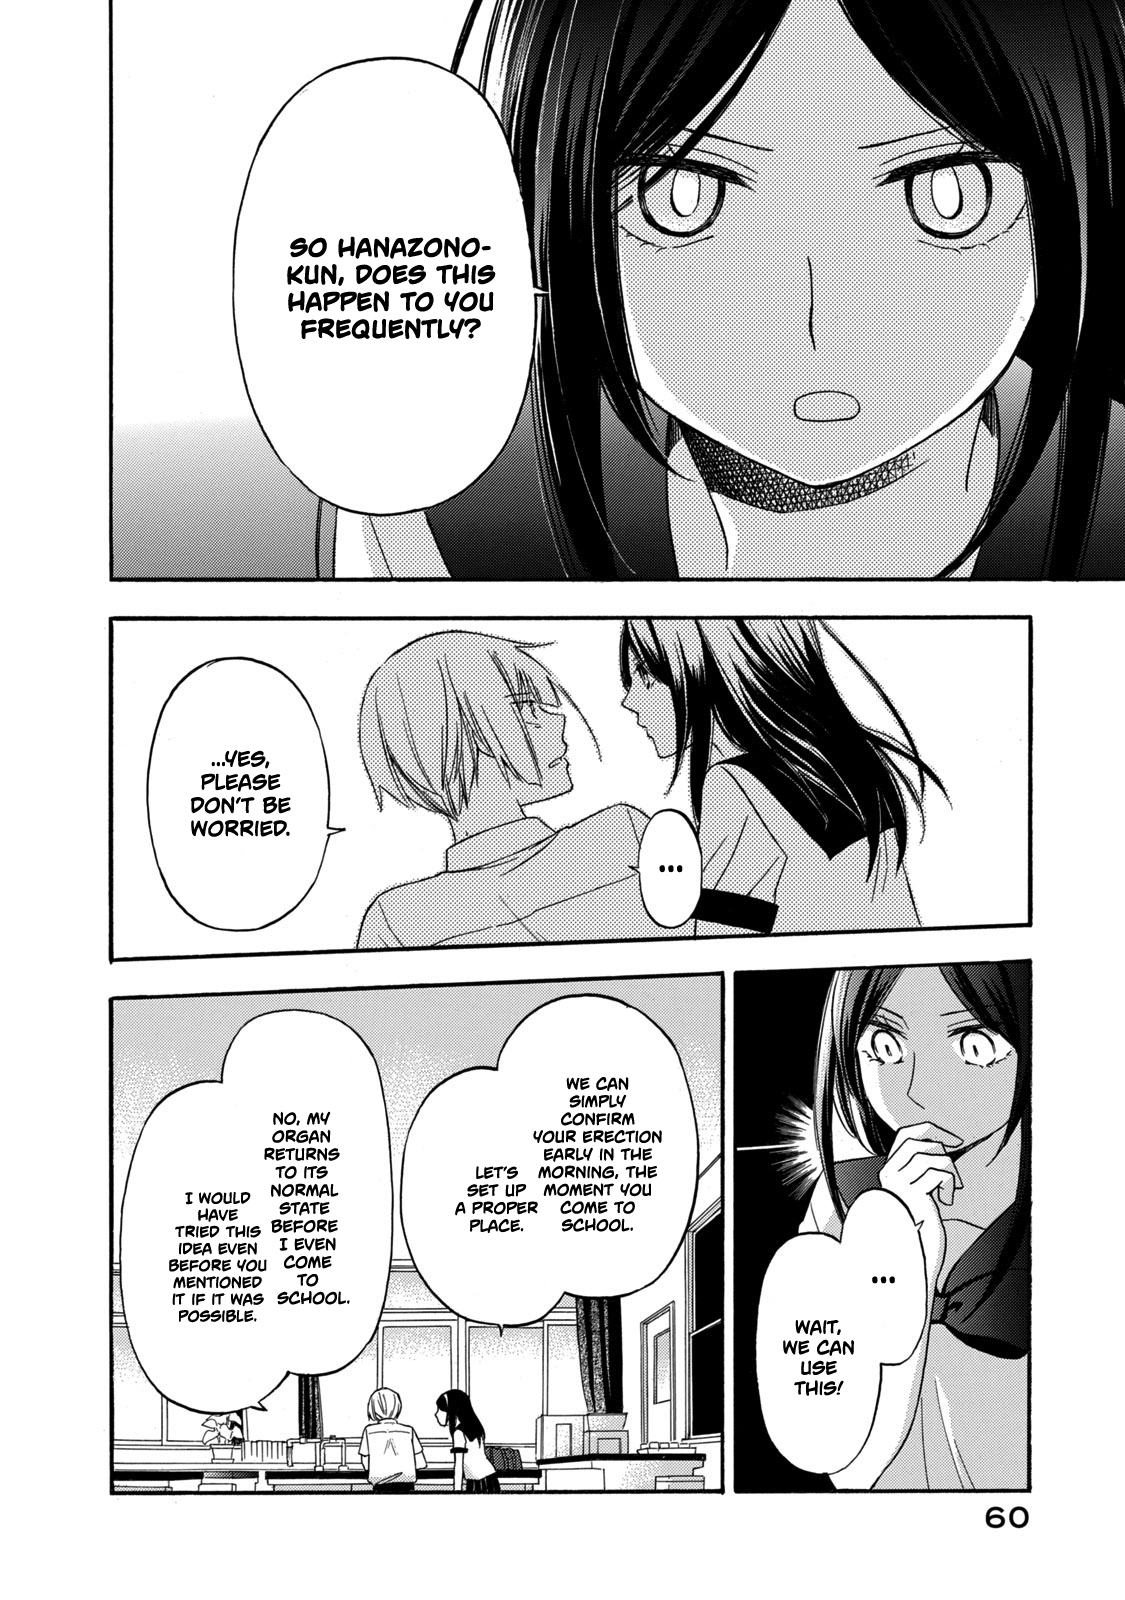 Hanazono and Kazoe's Bizarre After School Rendezvous Vol. 2 Ch. 12 An Inexplicable Phenomenon